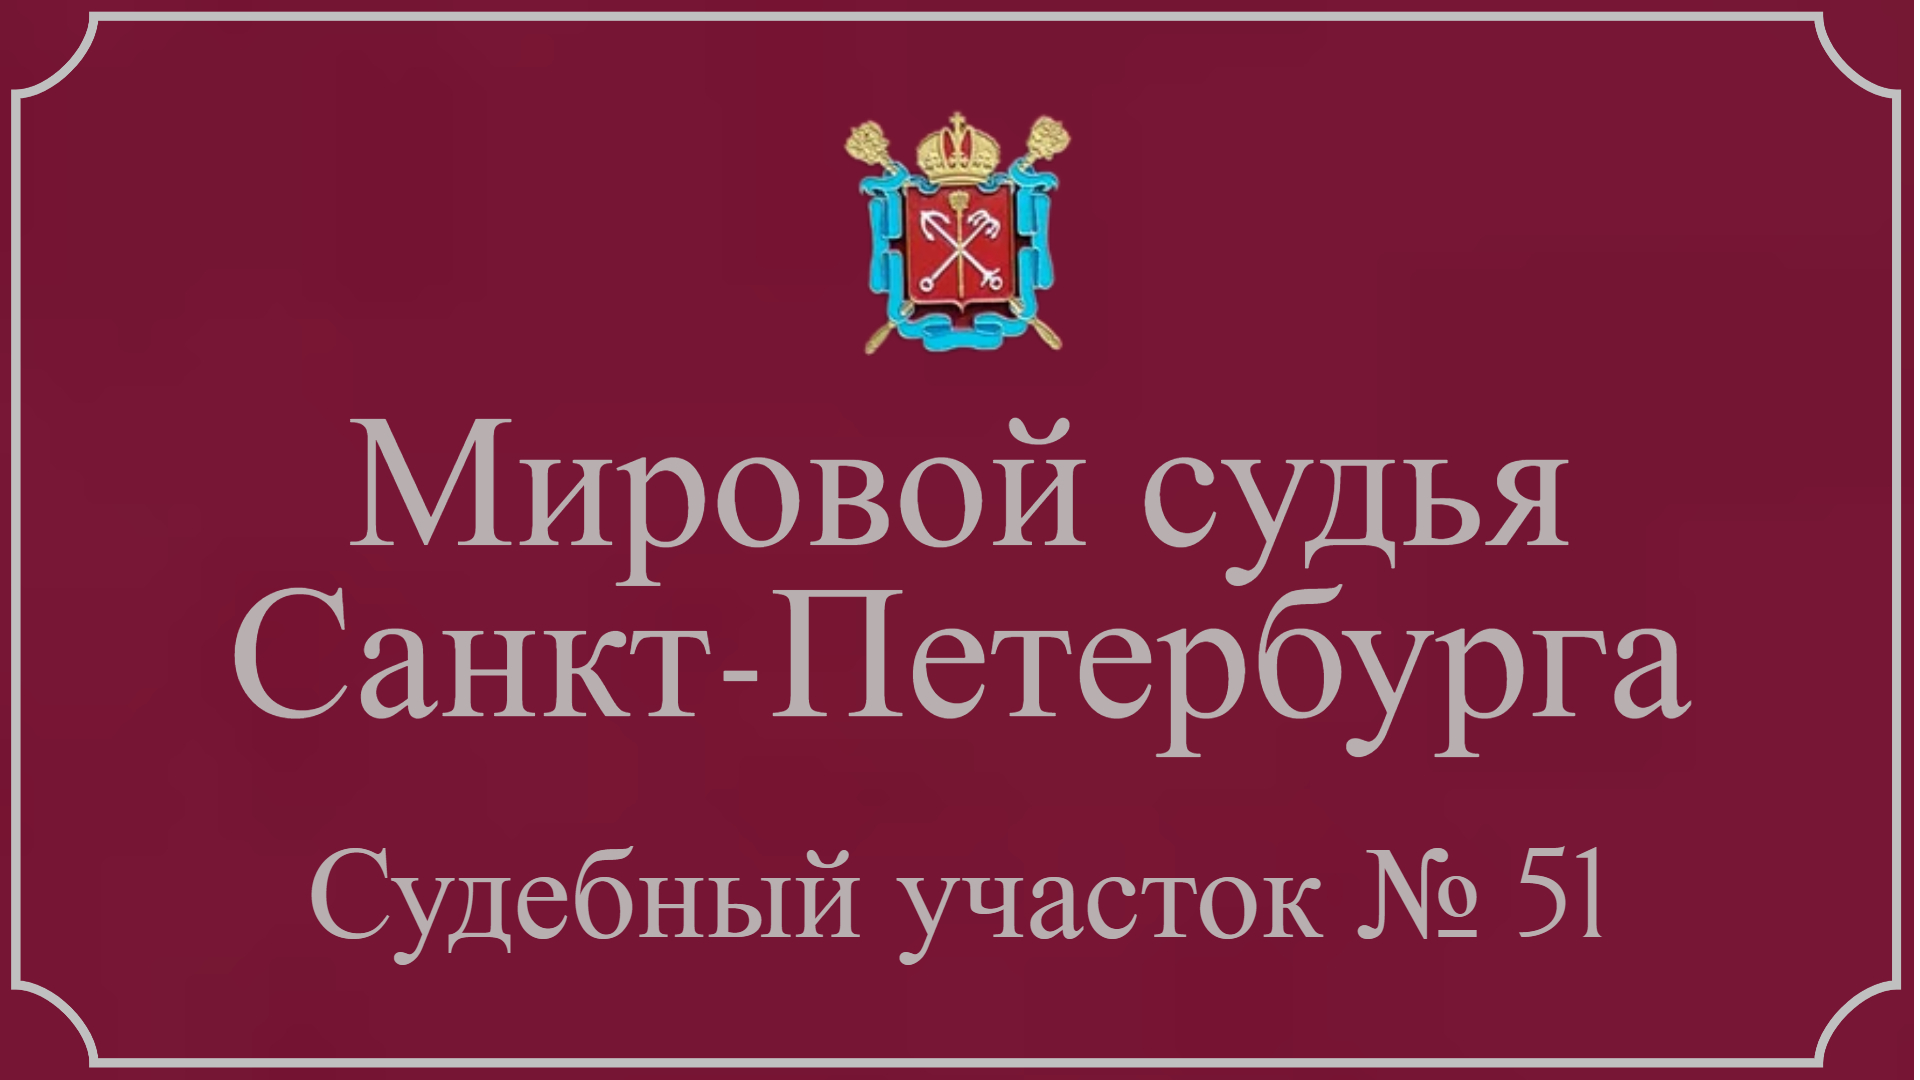 Информация по 51 судебному участку в Санкт-Петербурге.